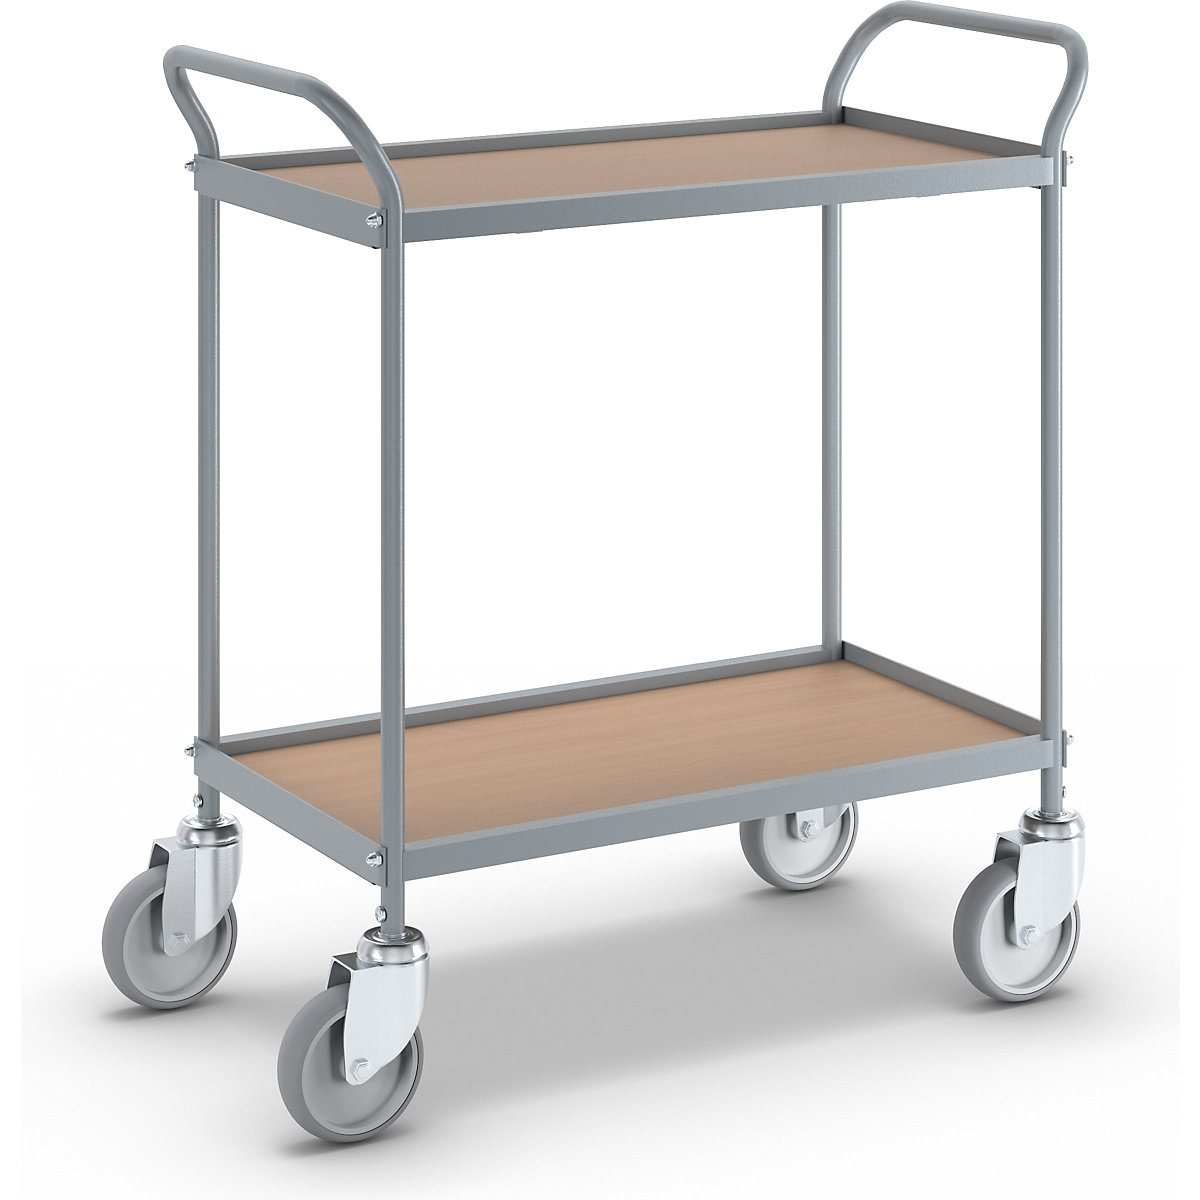 Serving trolley – eurokraft pro, shelf height 530 mm, 2 shelves, with 4 swivel castors, wheel Ø 125 mm-2